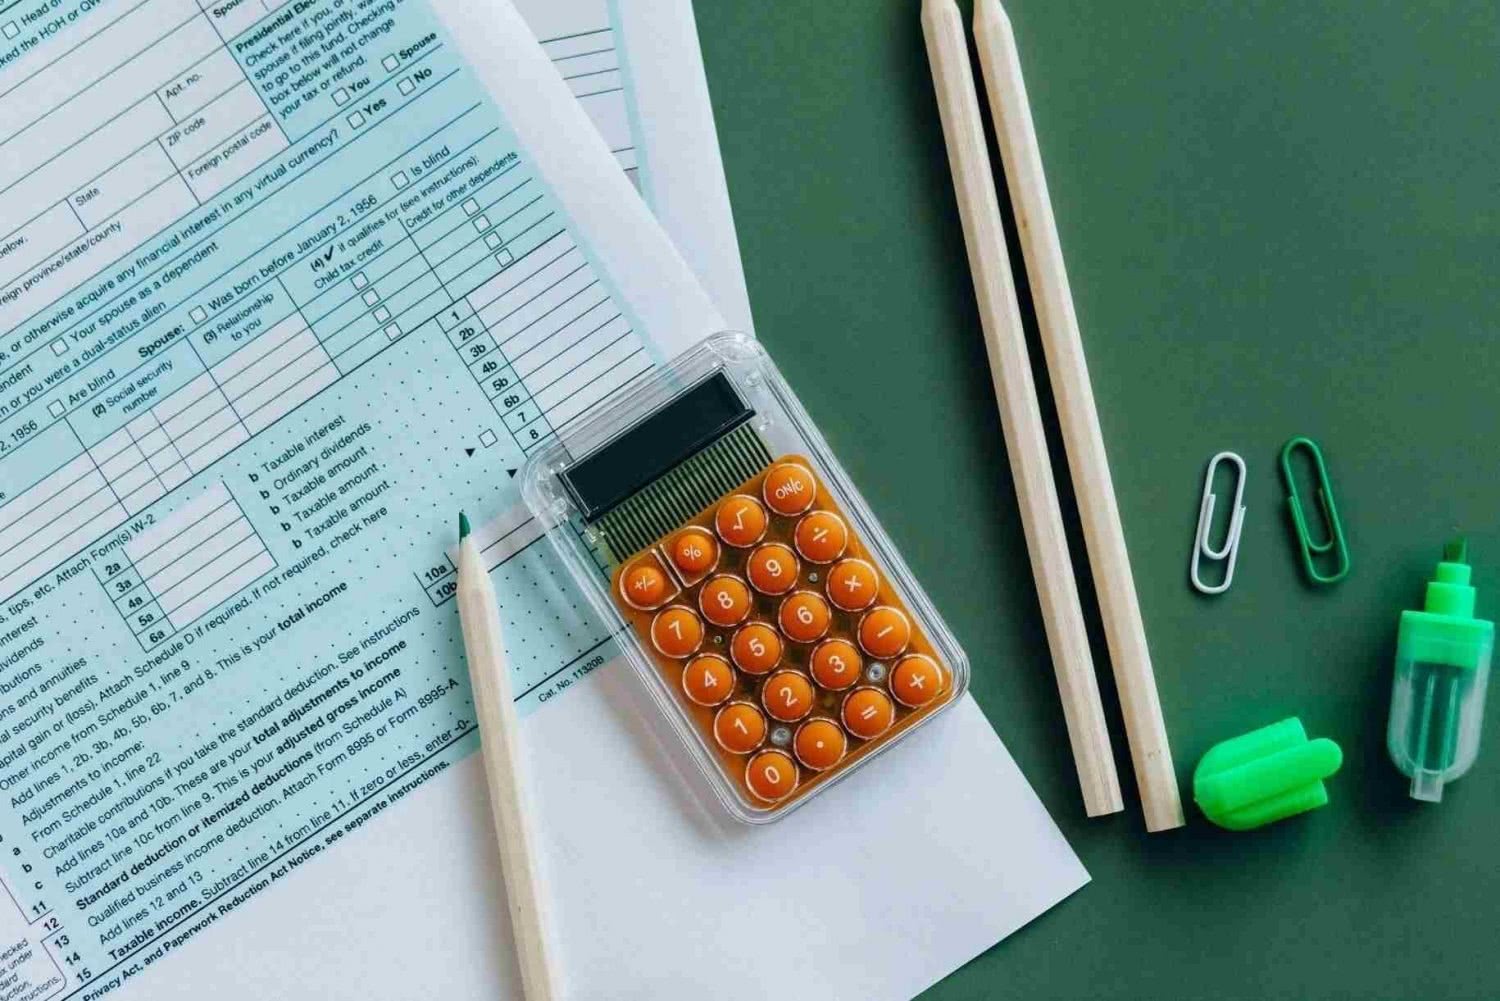 Dichiarazione dei redditi, calcolatrice, pennarelli e penne su una scrivania